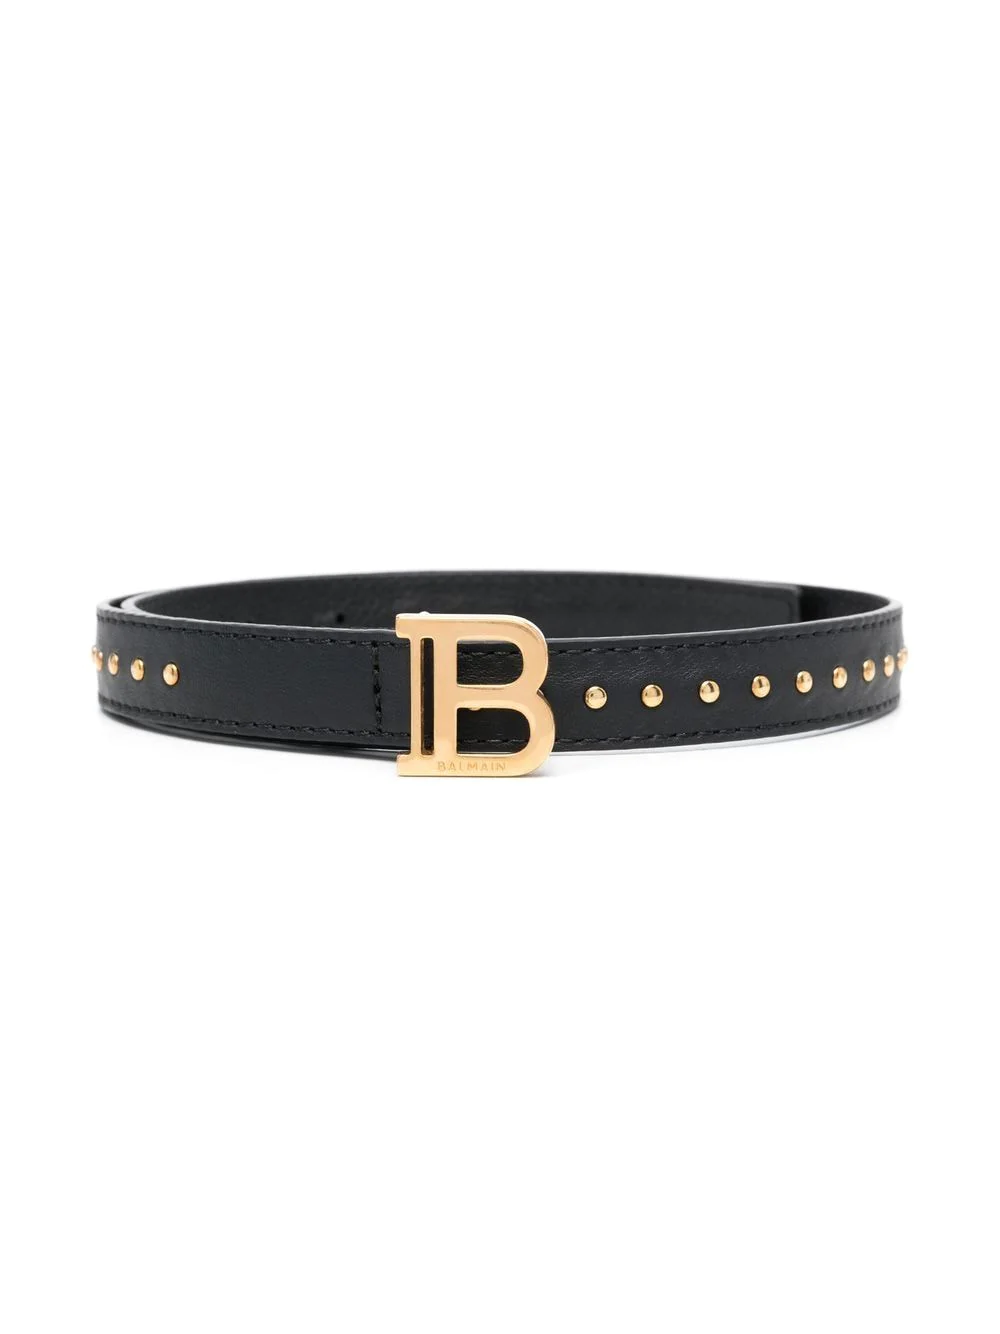 balmain BS0A21 BELTS black&gold 930OR